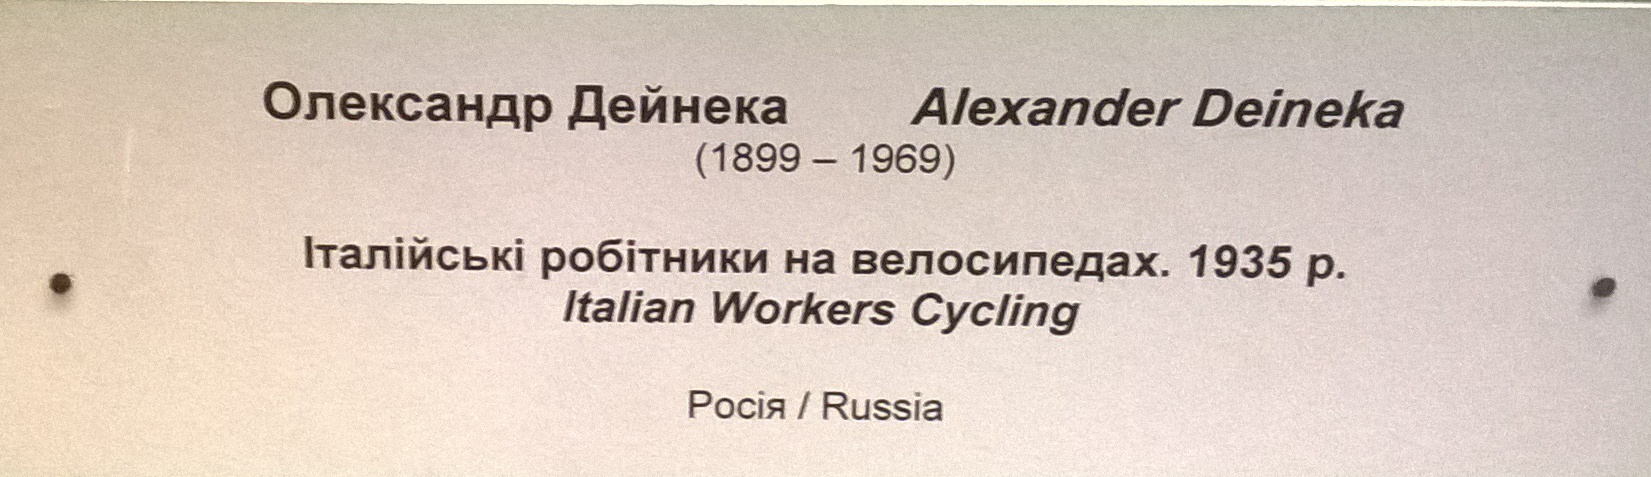 Итальянские работники на велосипедах 1935. Холст, масло. - 1